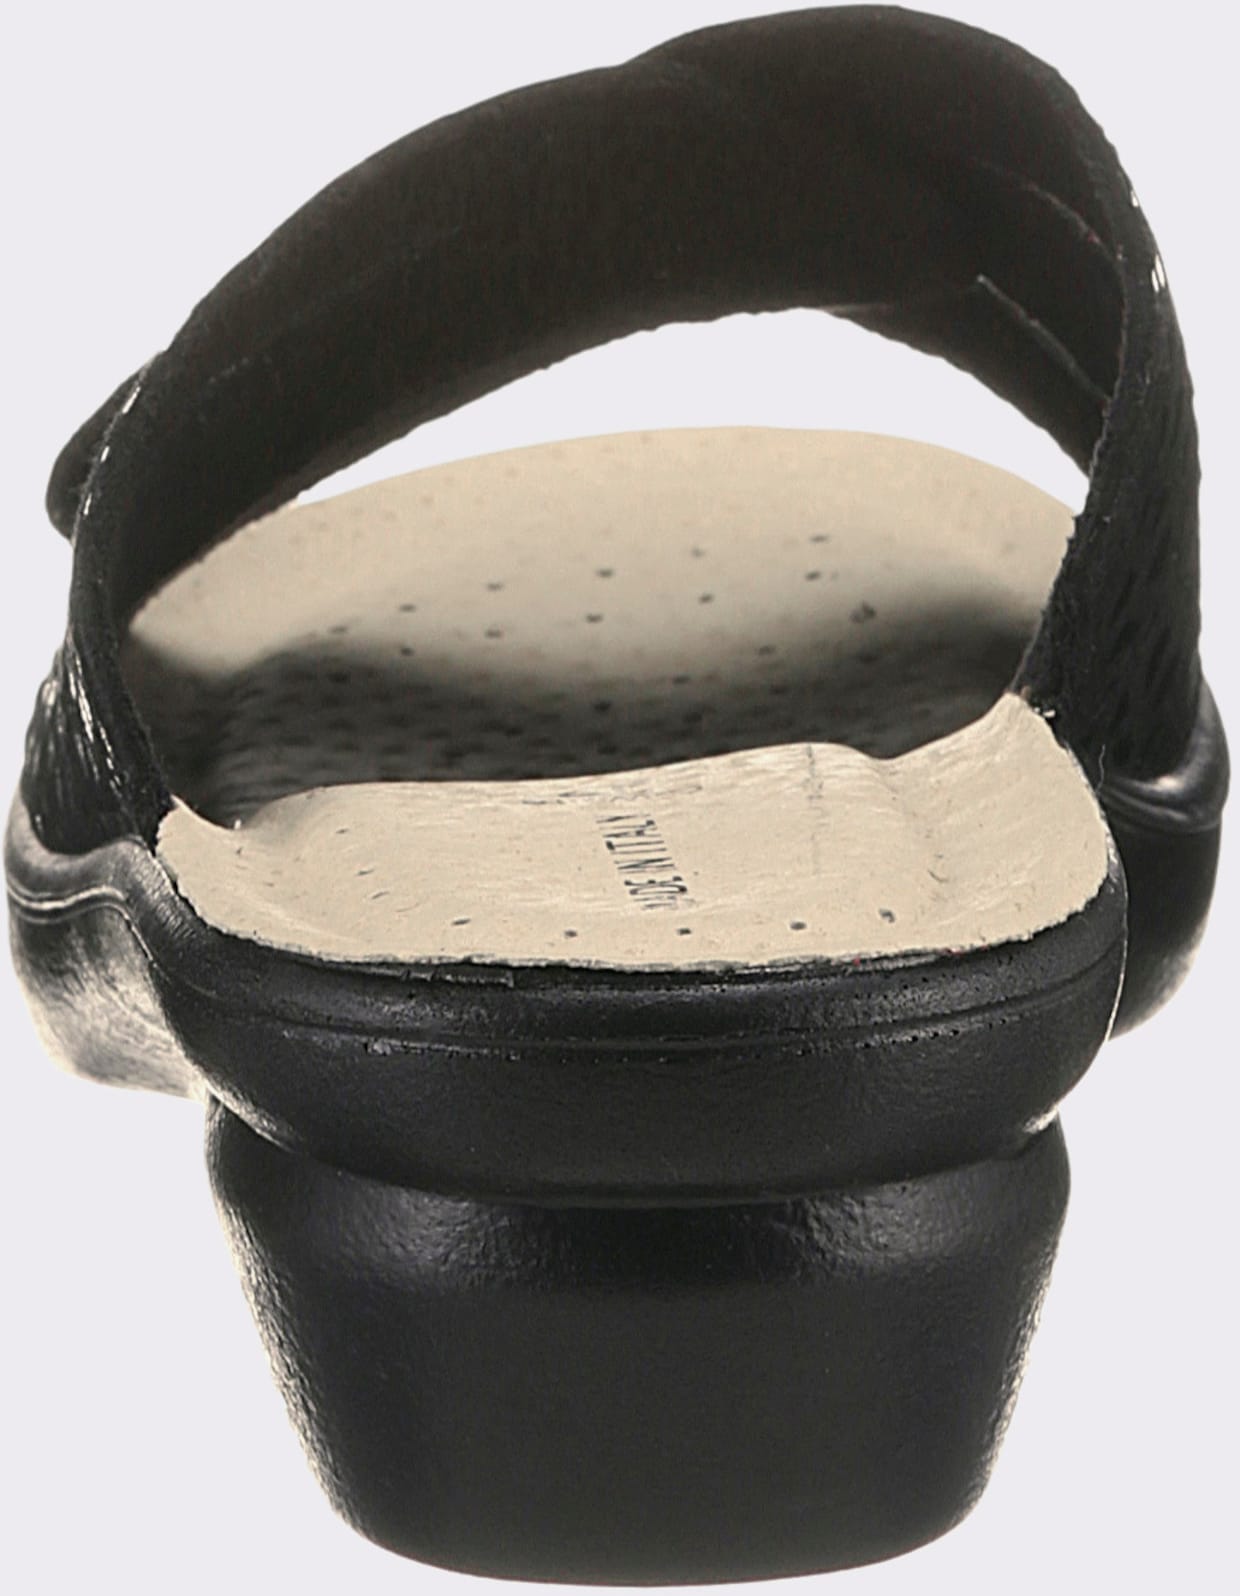 airsoft comfort+ slippers - zwart gedessineerd